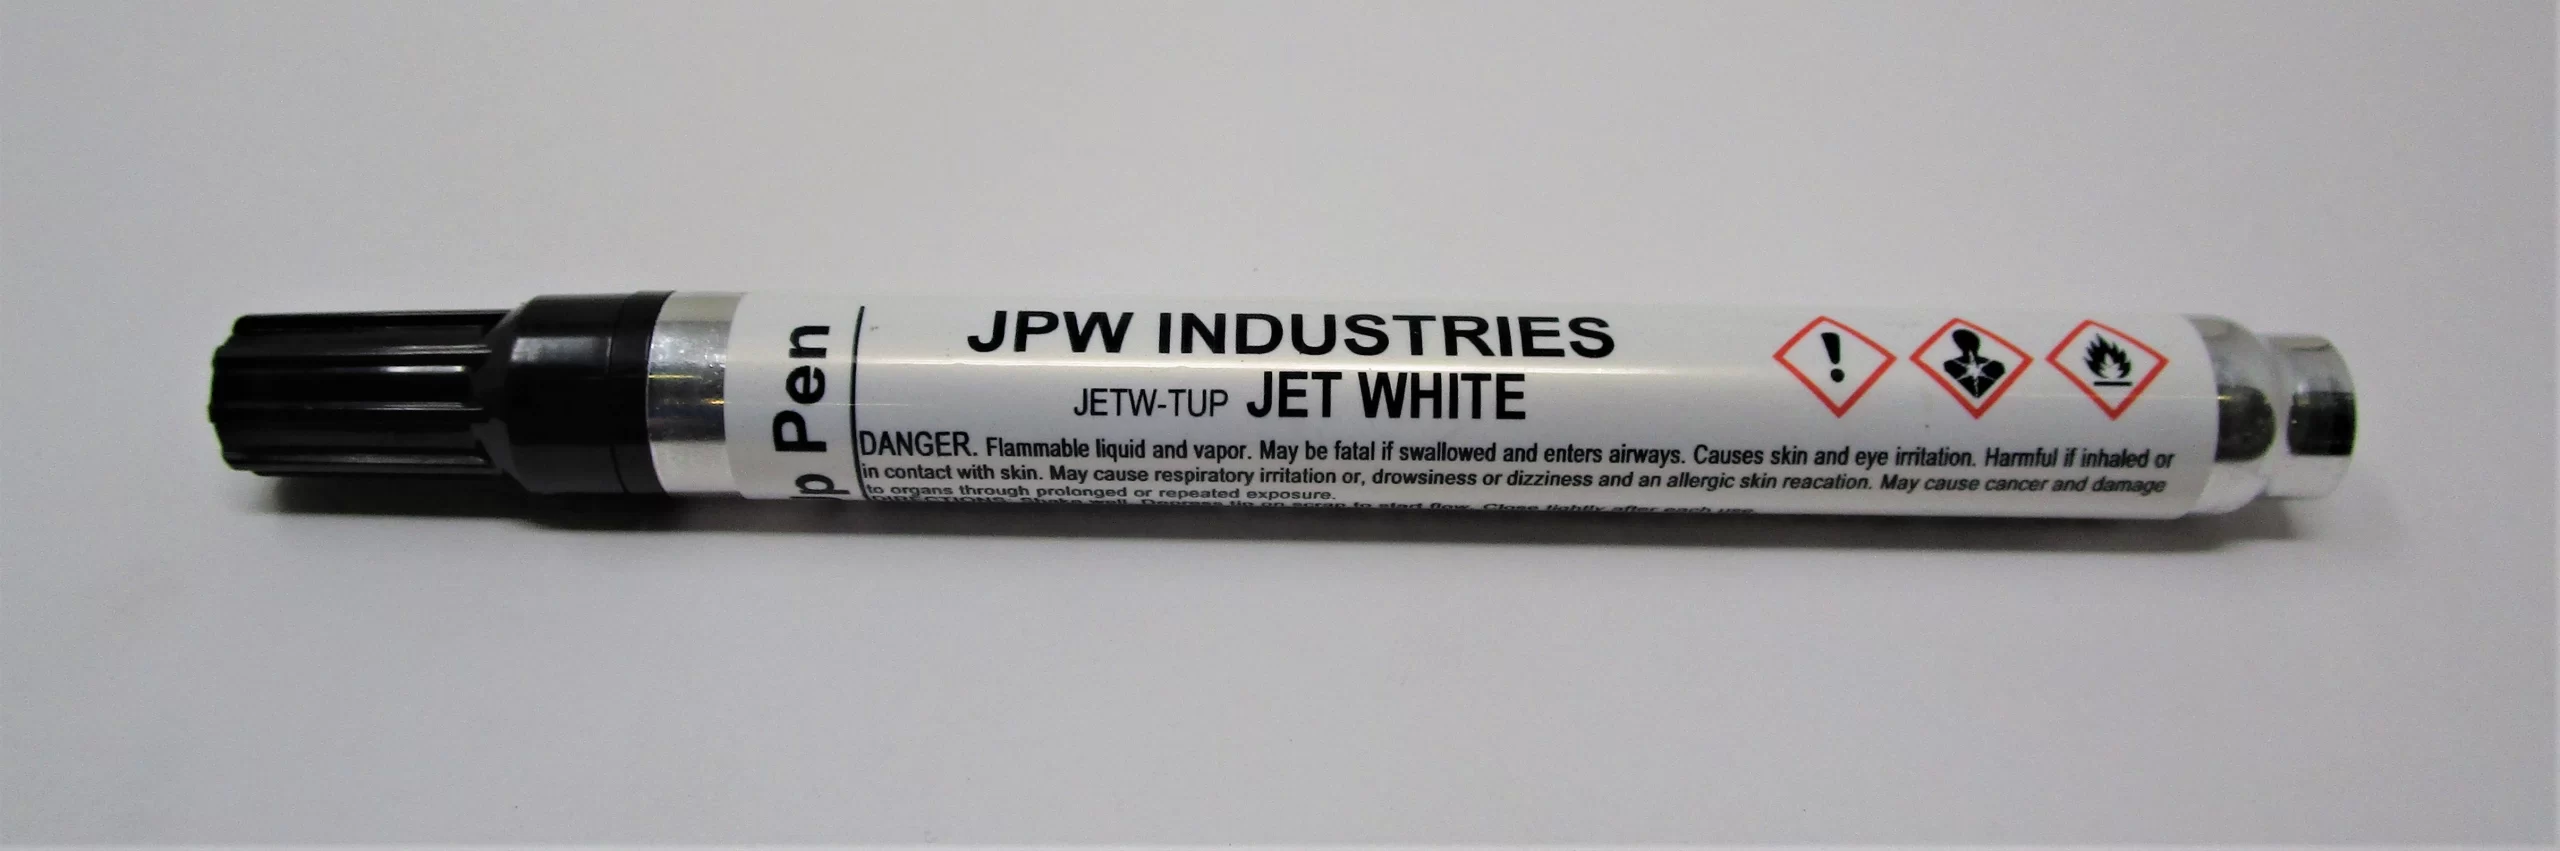 Jet white touch-up paint pen - Edward B. Mueller Co., Inc.